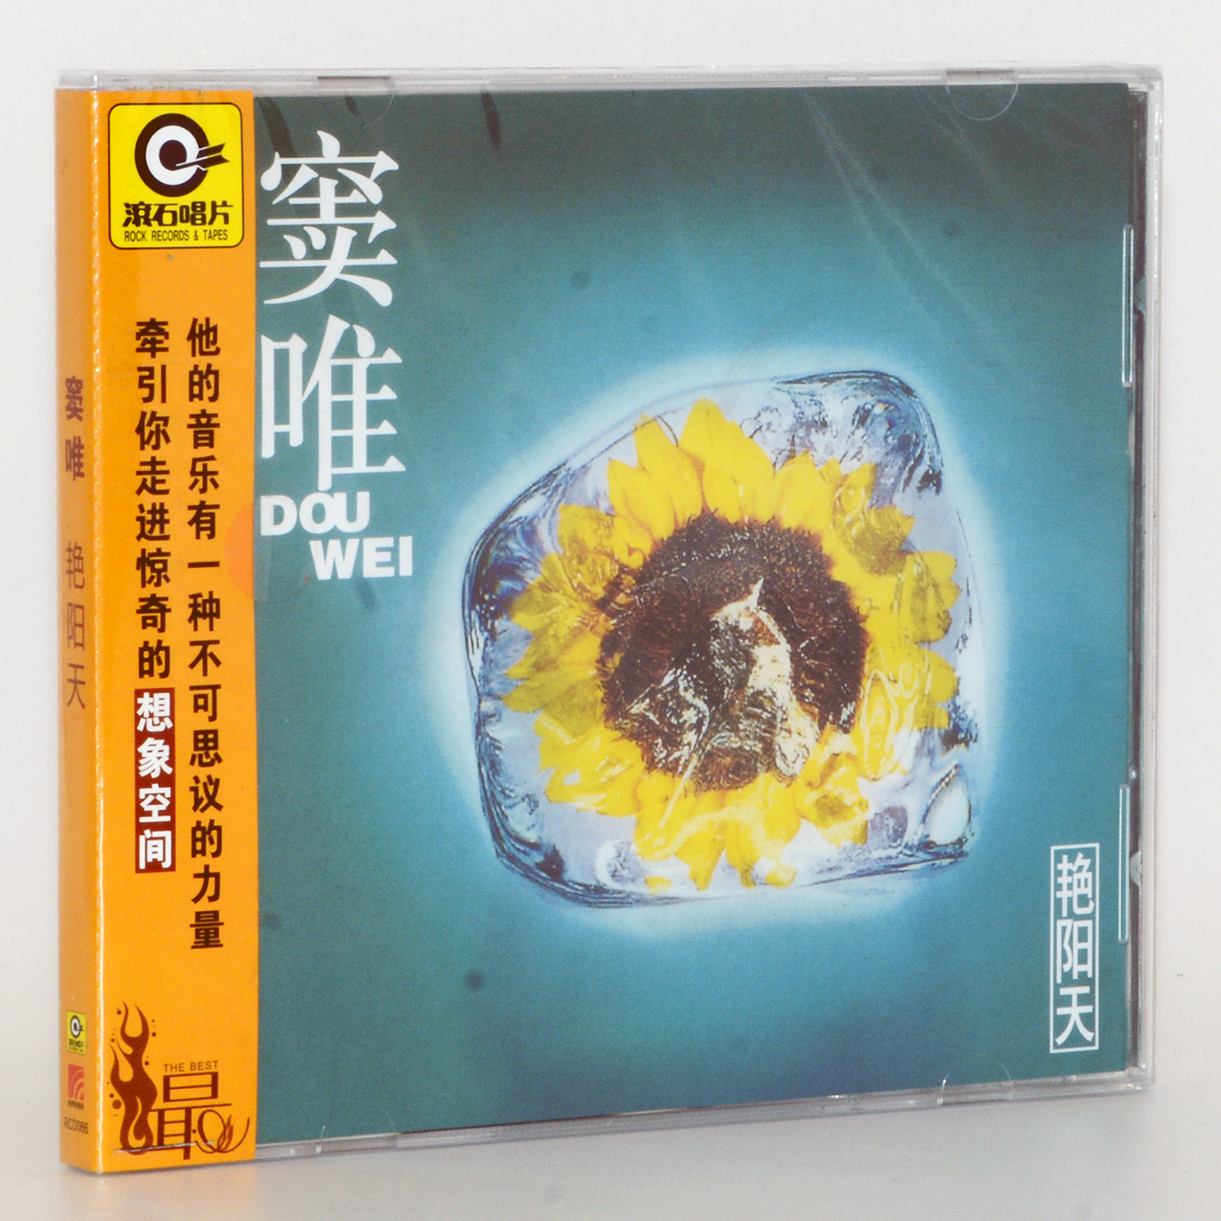 正版唱片 窦唯 艳阳天 CD+歌词本 华语摇滚音乐专辑 滚石经典再版